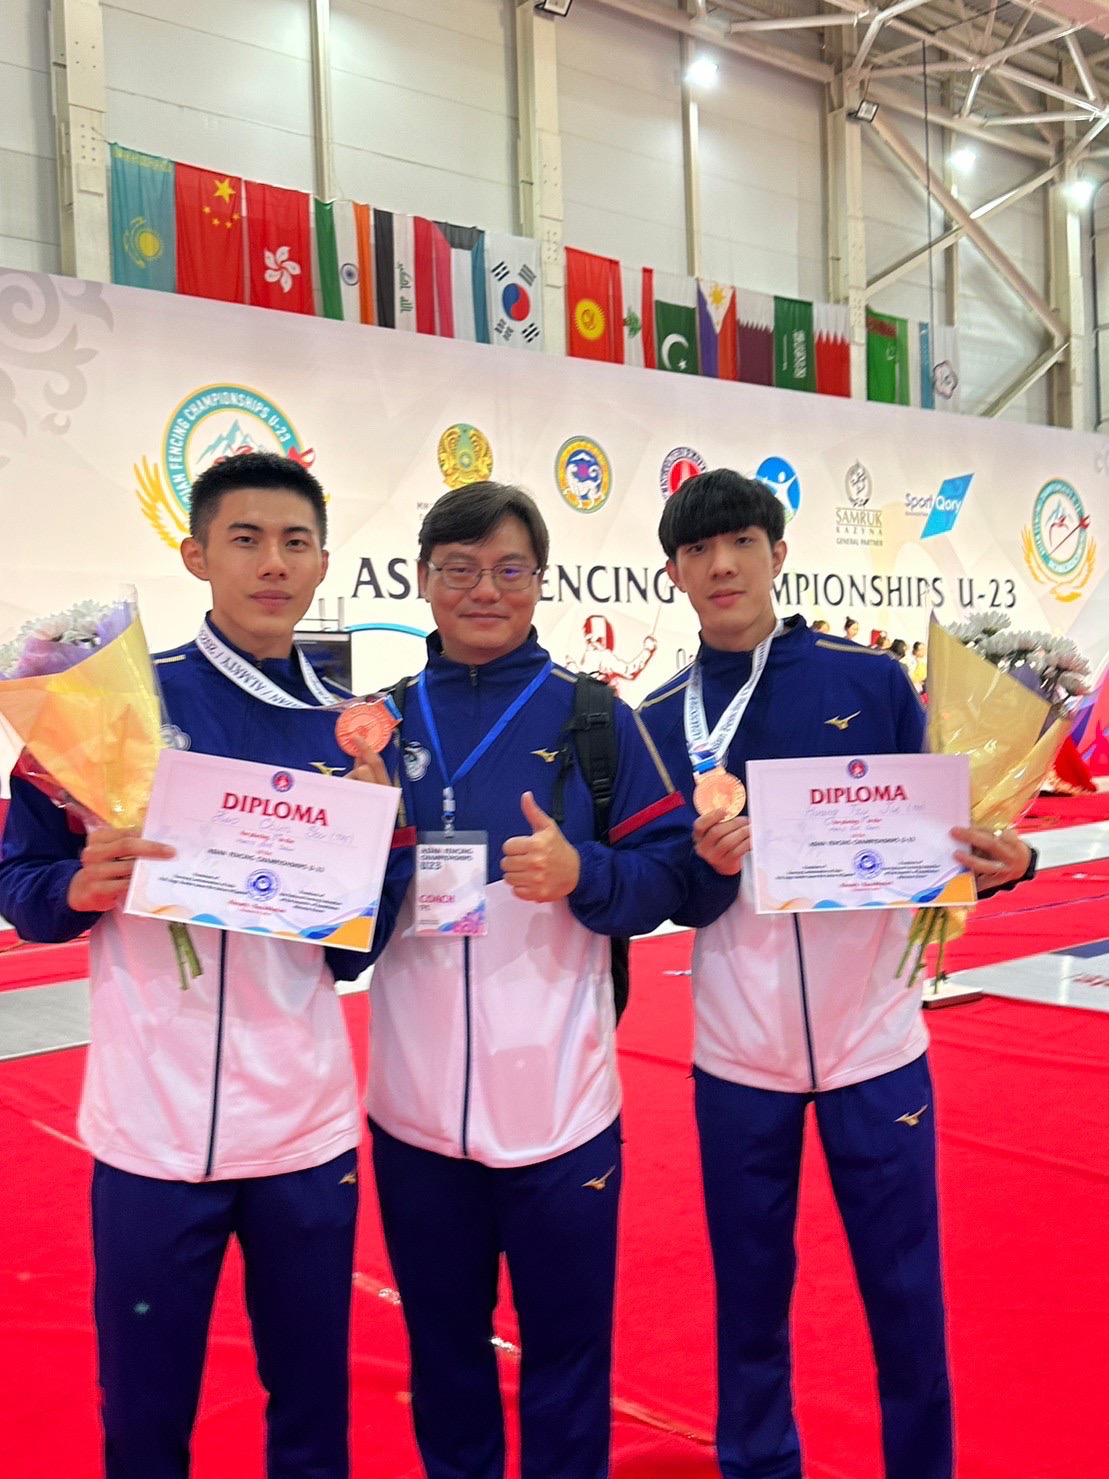 本校擊劍隊郭均祐參加亞洲U23擊劍錦標賽 榮獲男子鈍劍團體銅牌